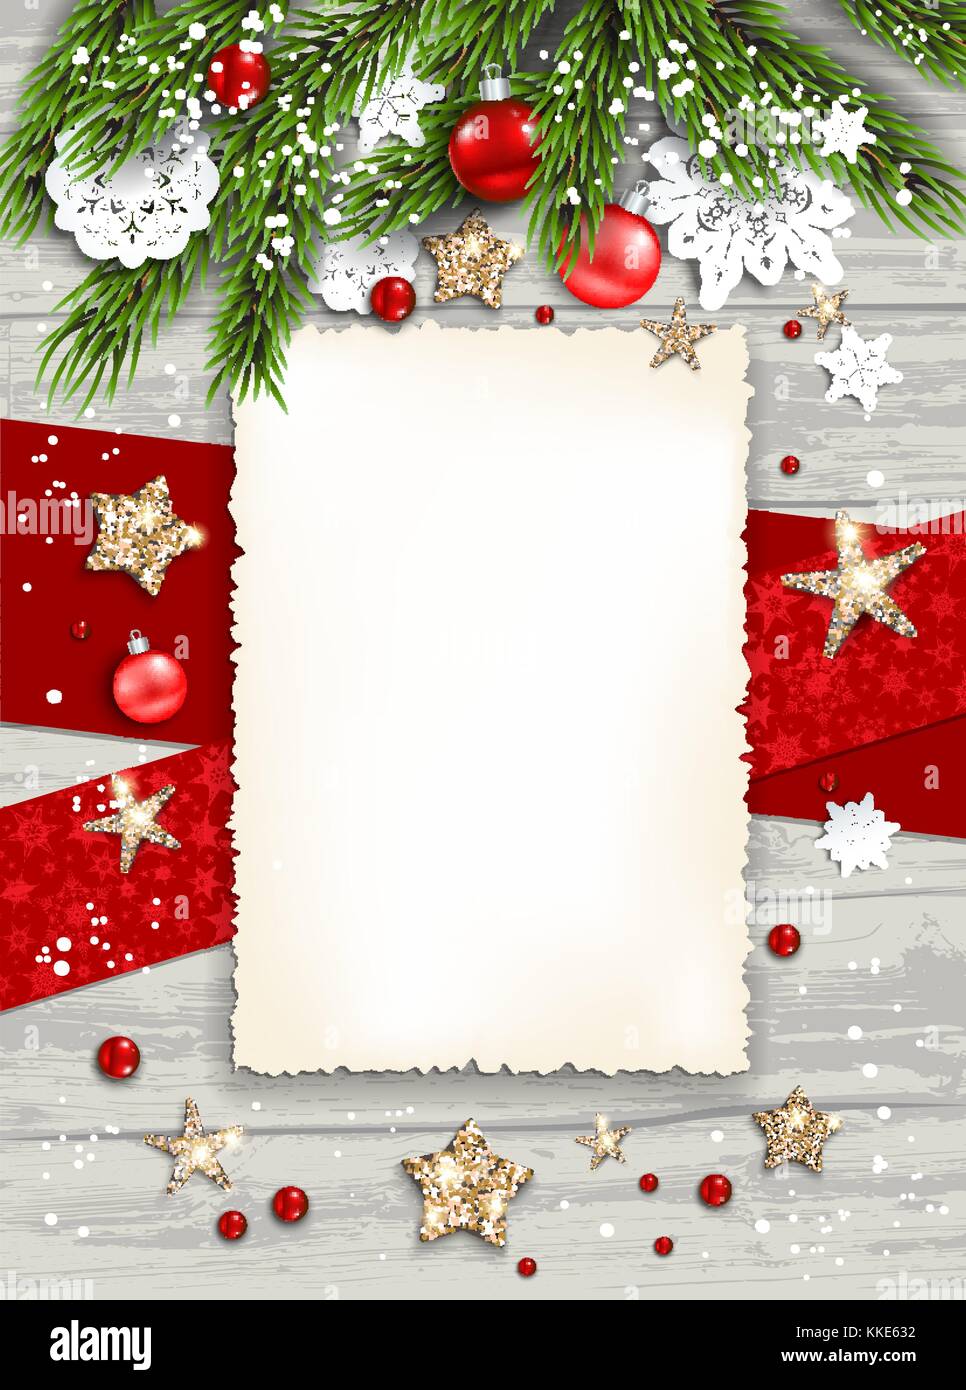 Winter white card frame Stock Vector Image & Art - Alamy